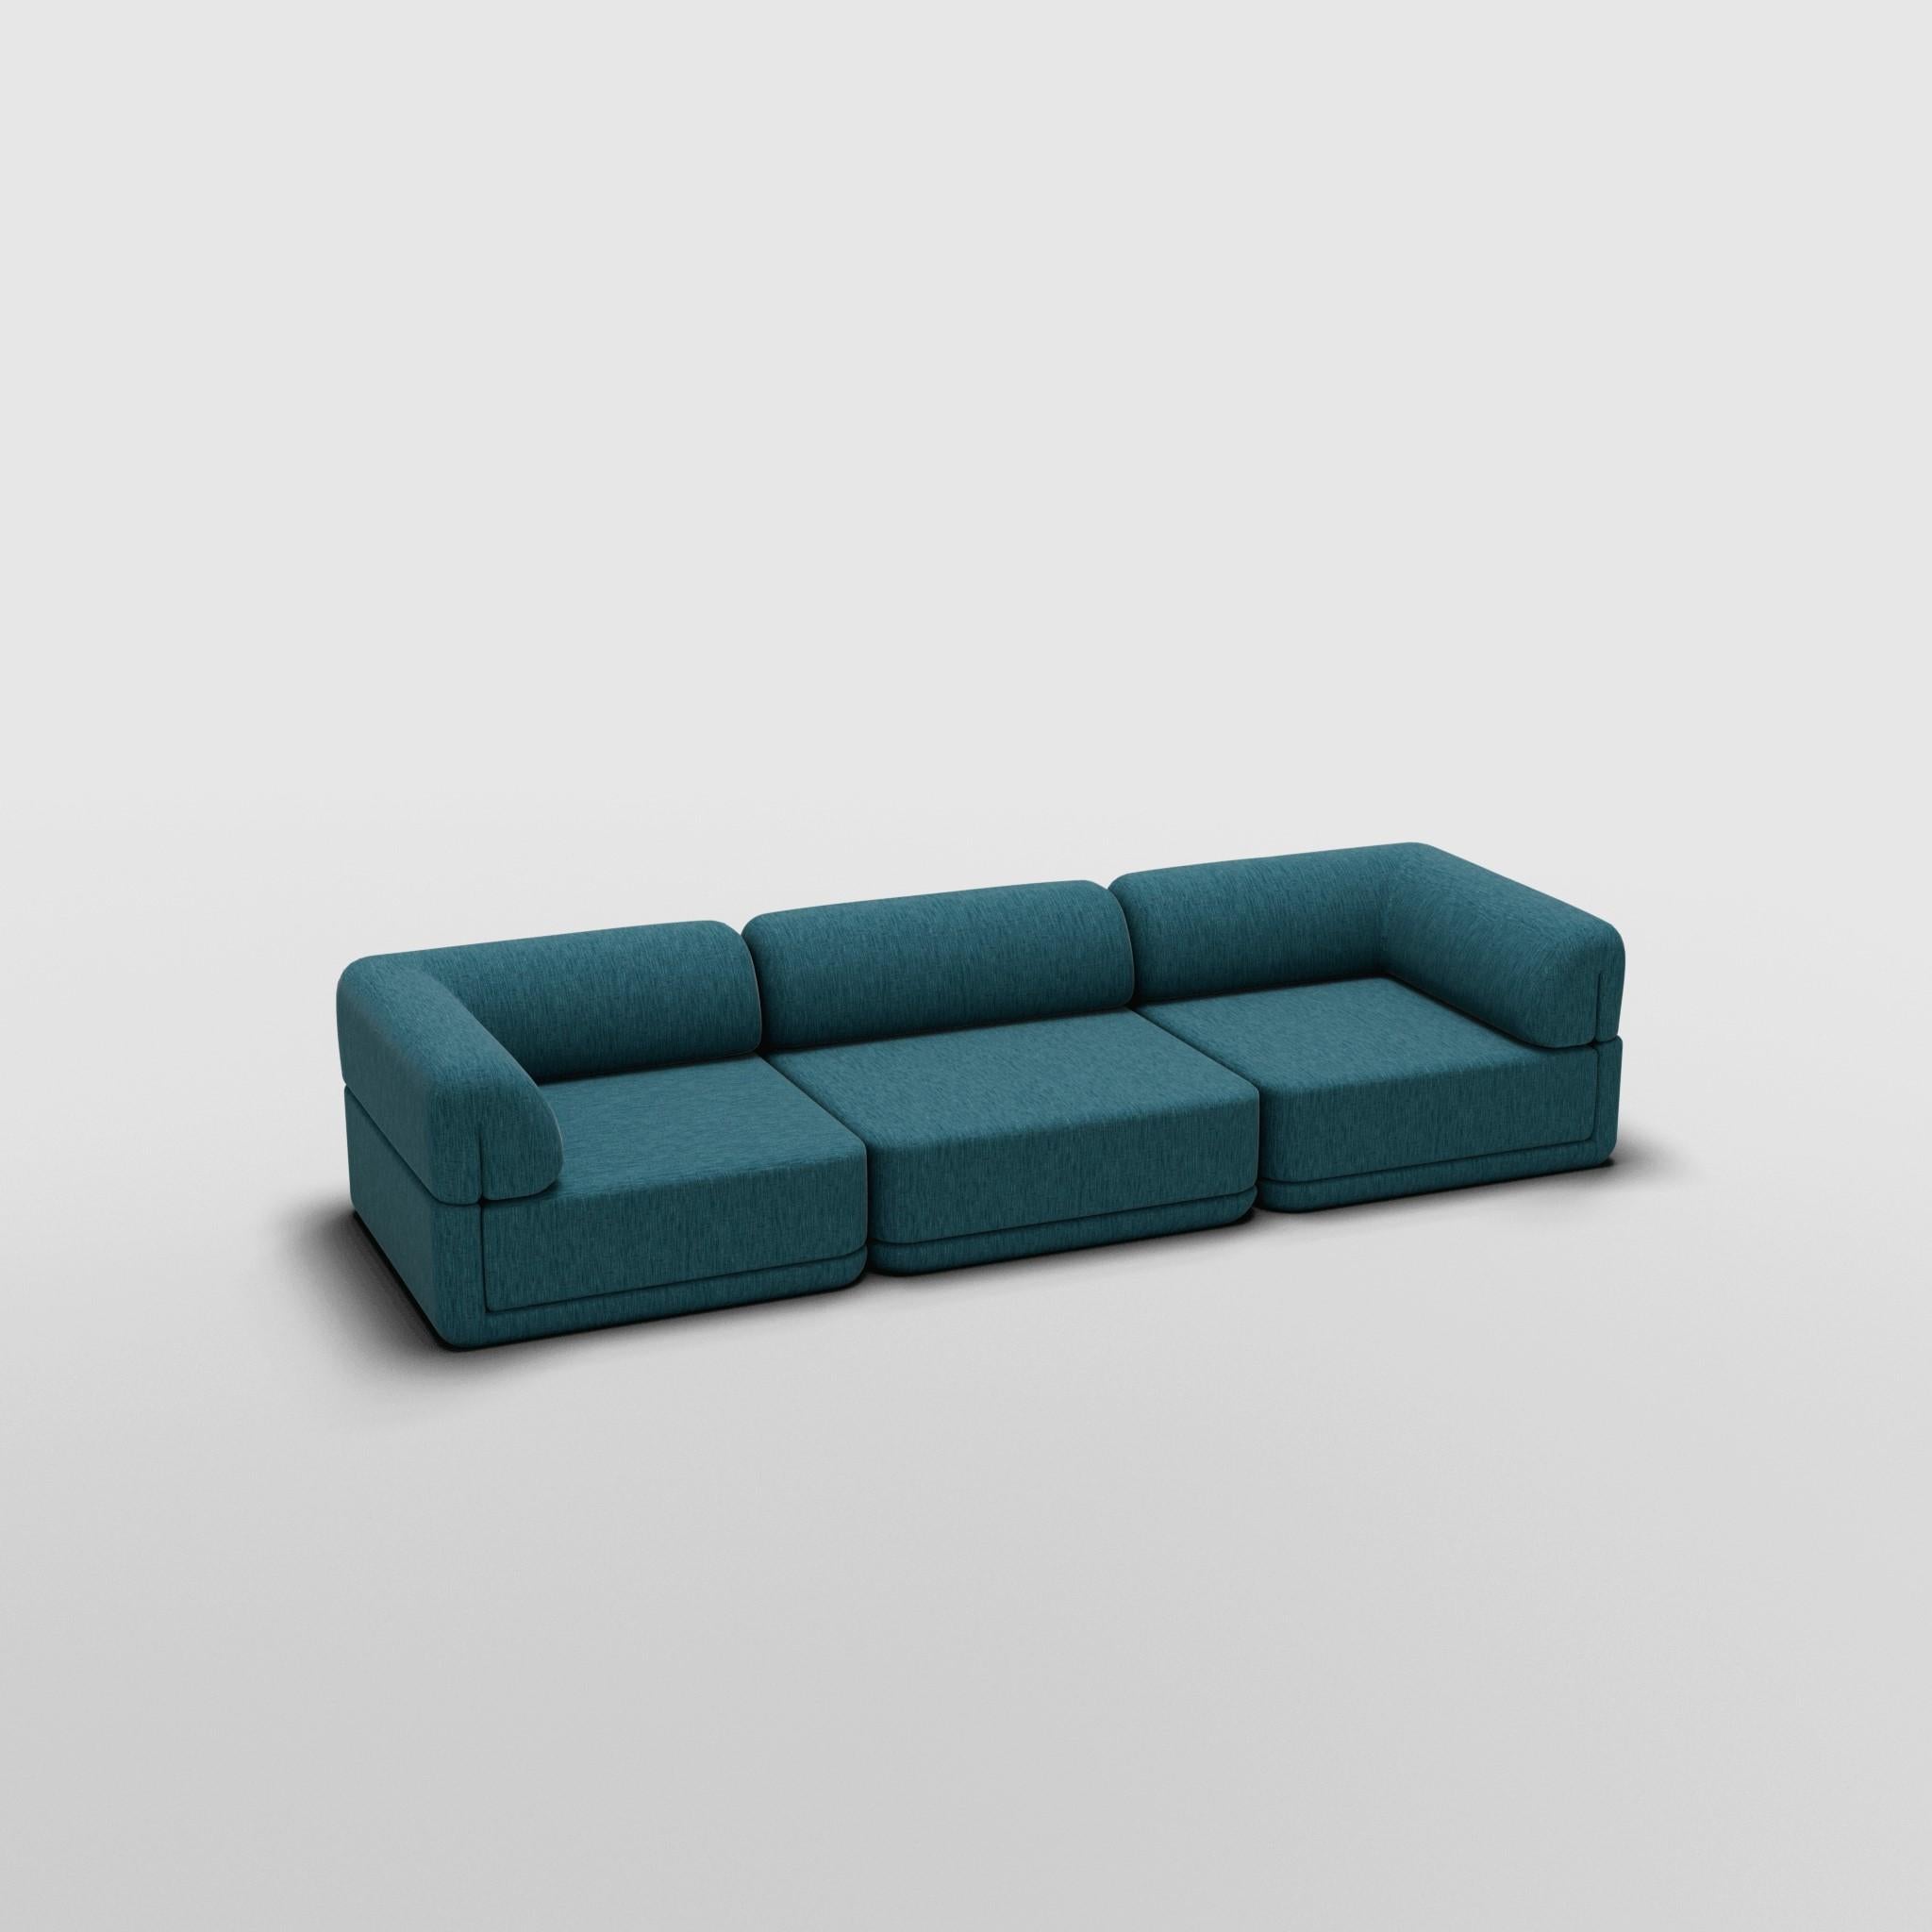 Sofa Lounge Set - Inspiriert von italienischen Luxusmöbeln der 70er Jahre

Entdecken Sie das Cube Sofa, wo Kunst auf Anpassungsfähigkeit trifft. Sein skulpturales Design und der individuell anpassbare Komfort schaffen unendliche Möglichkeiten für